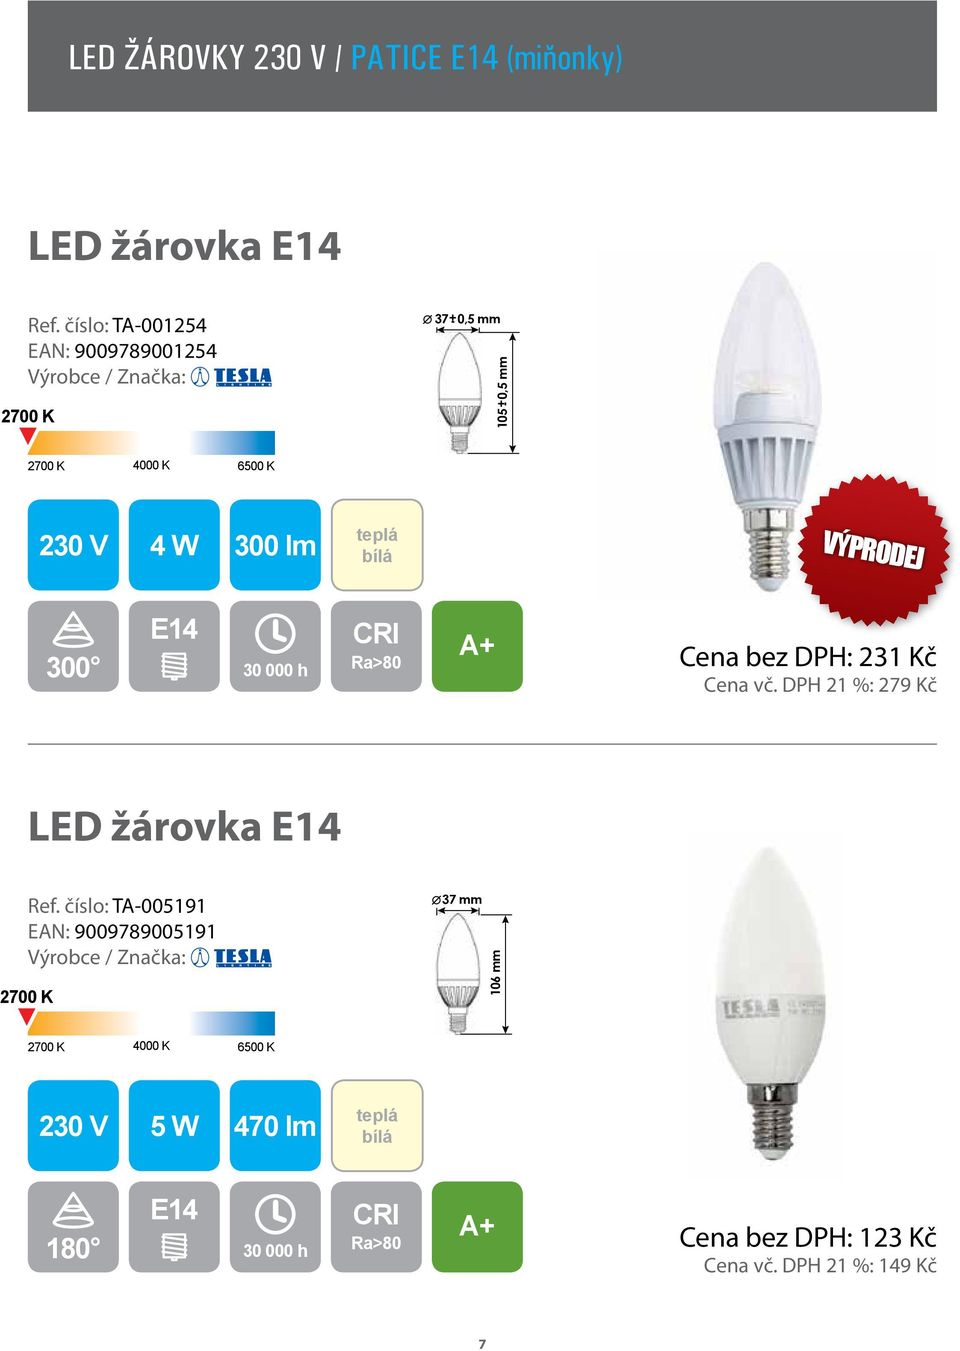 30 000 h Cena bez DPH: 231 Kč Cena vč. DPH 21 %: 279 Kč LED žárovka E14 Ref.